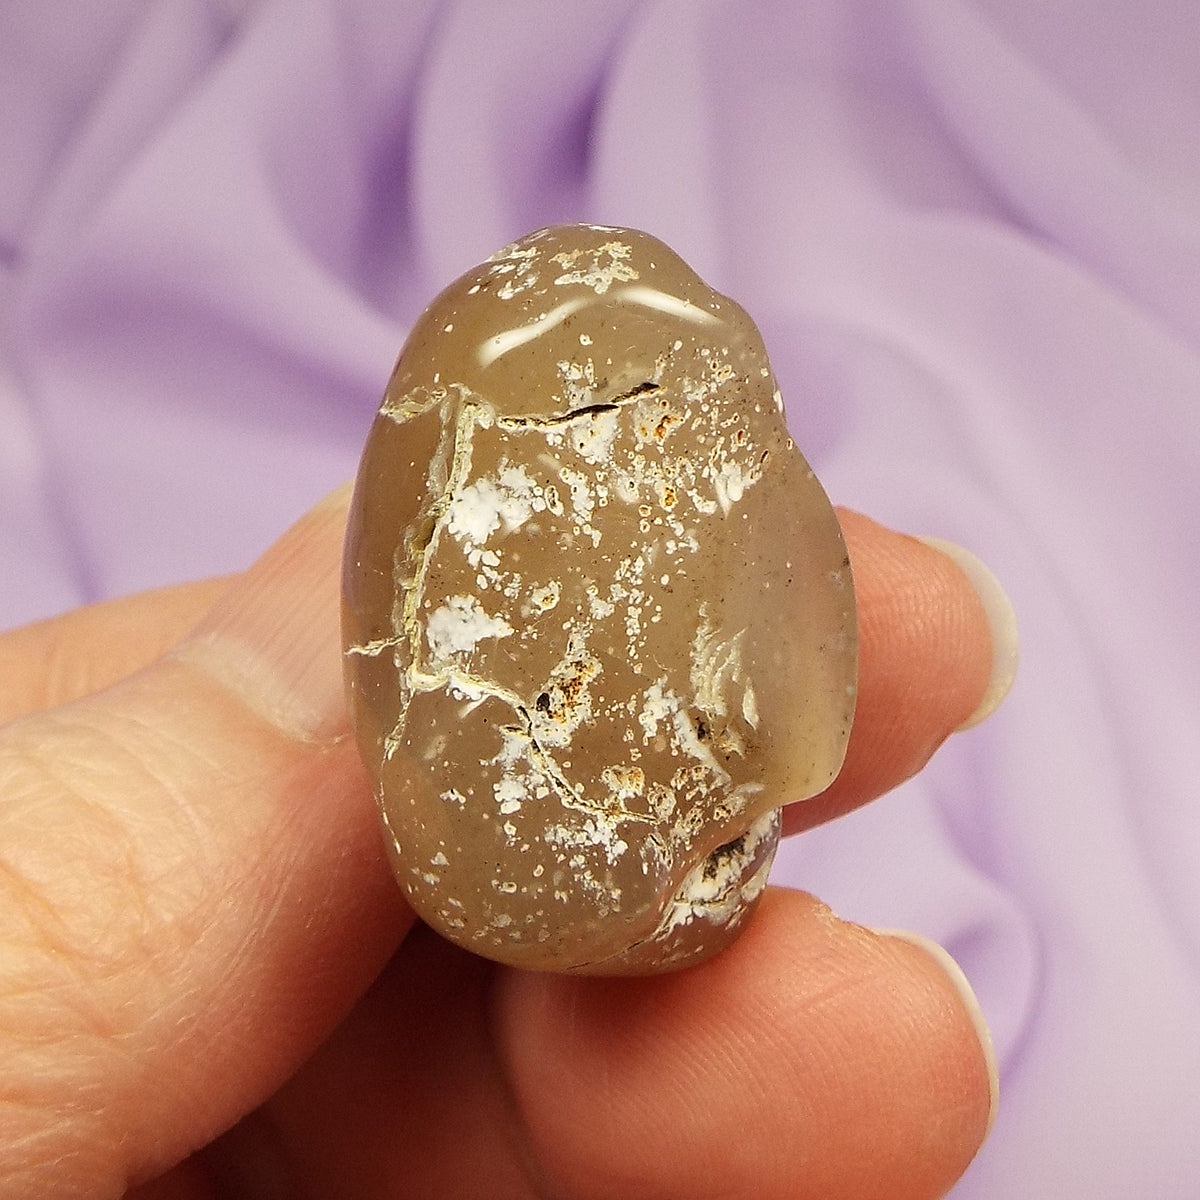 Snakeskin Agate tumble stone 16.6g SN51861